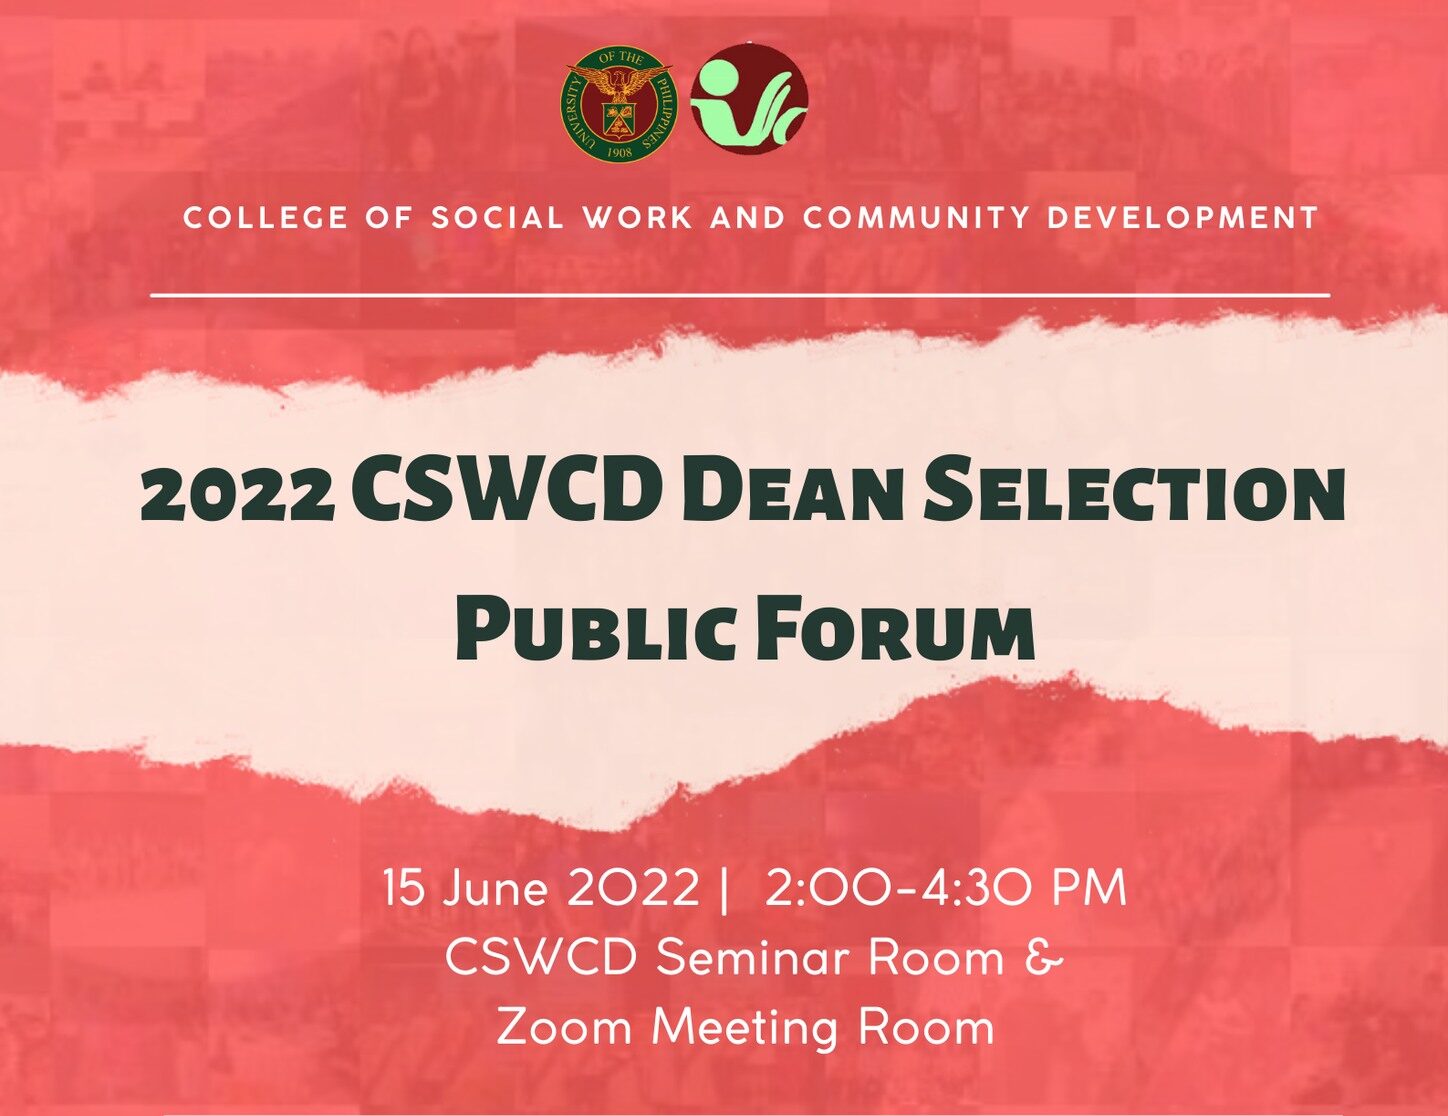 2022 CSWCD Dean Selection Public Forum